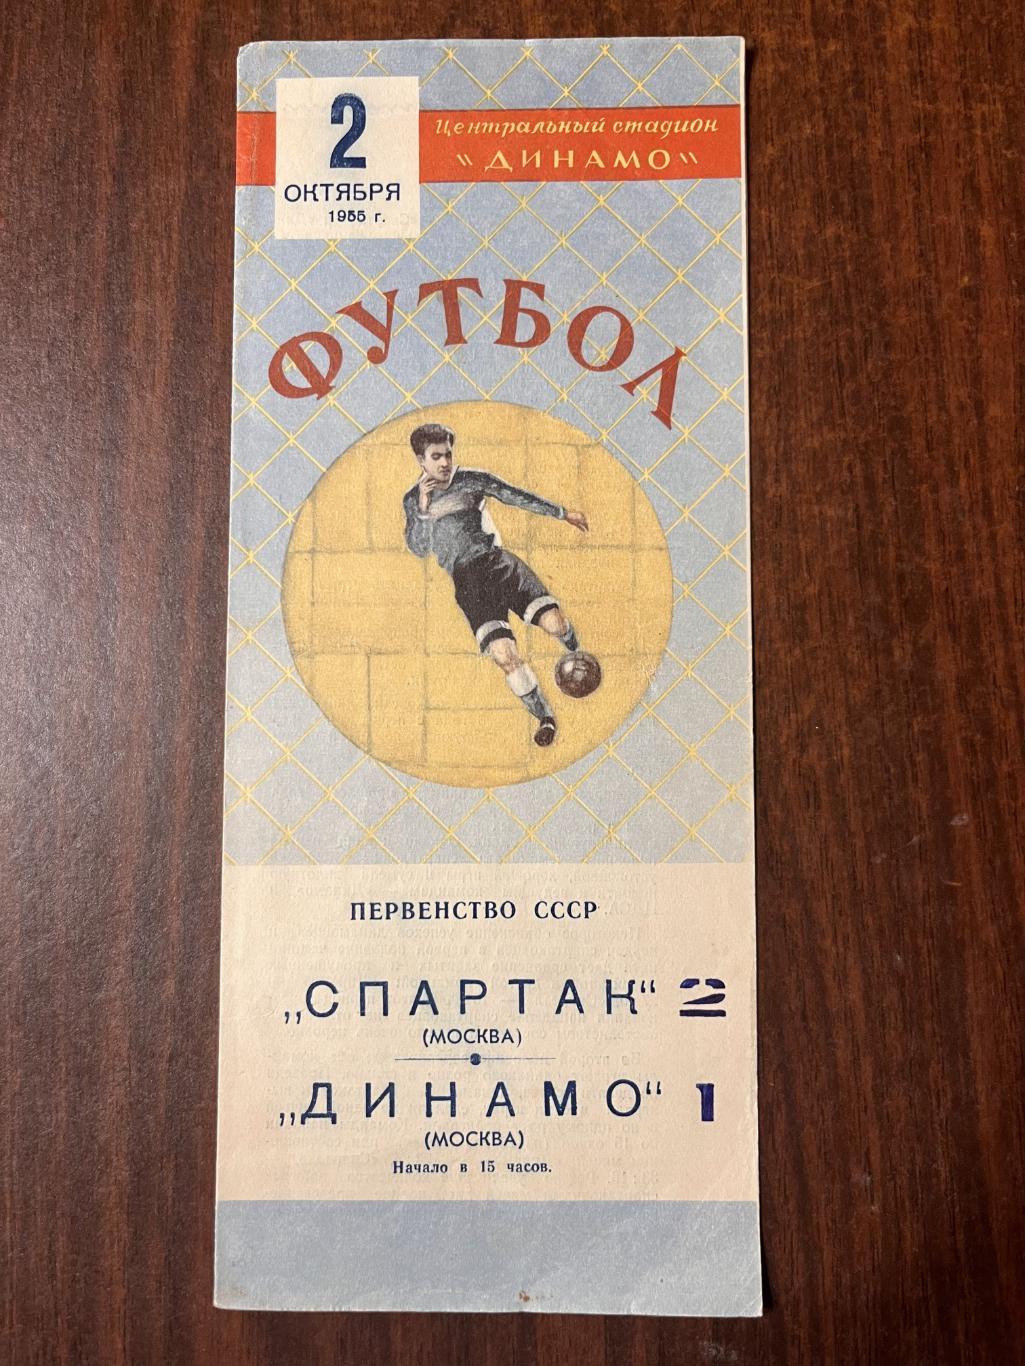 Спартак Москва - Динамо Москва 2 октября 1955